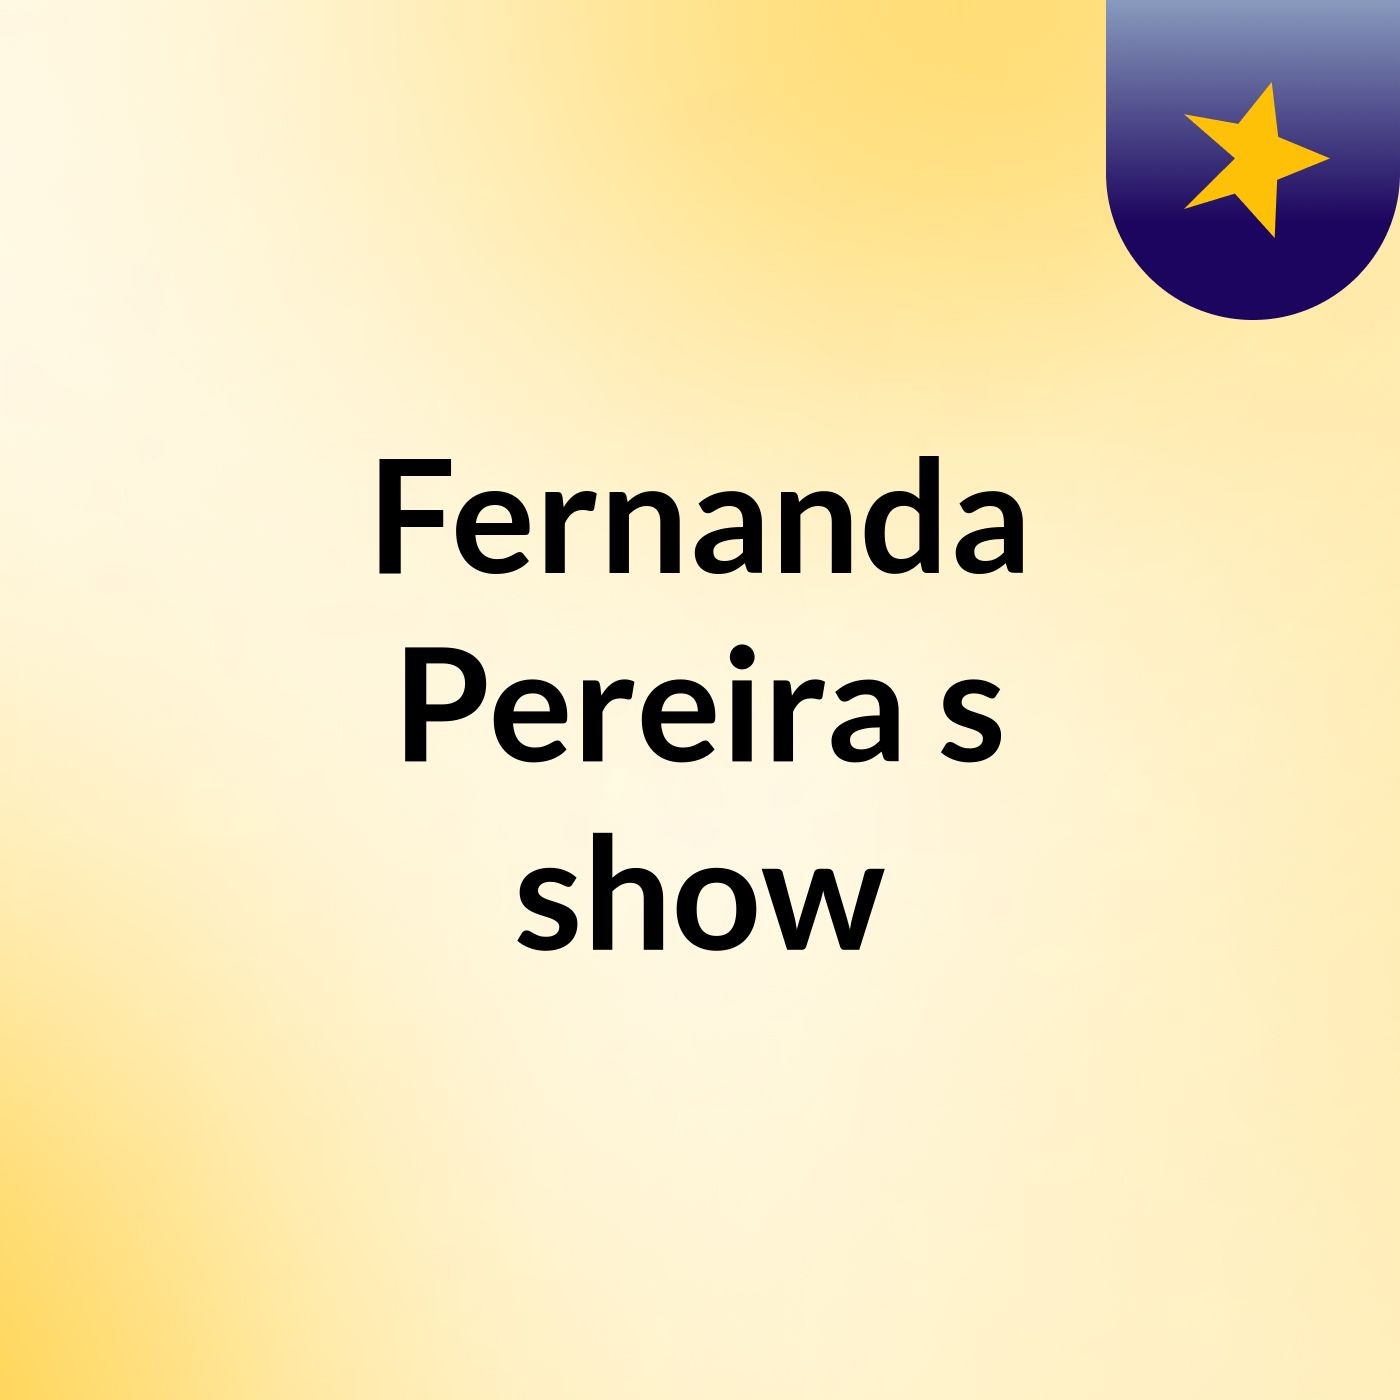 Fernanda Pereira's show